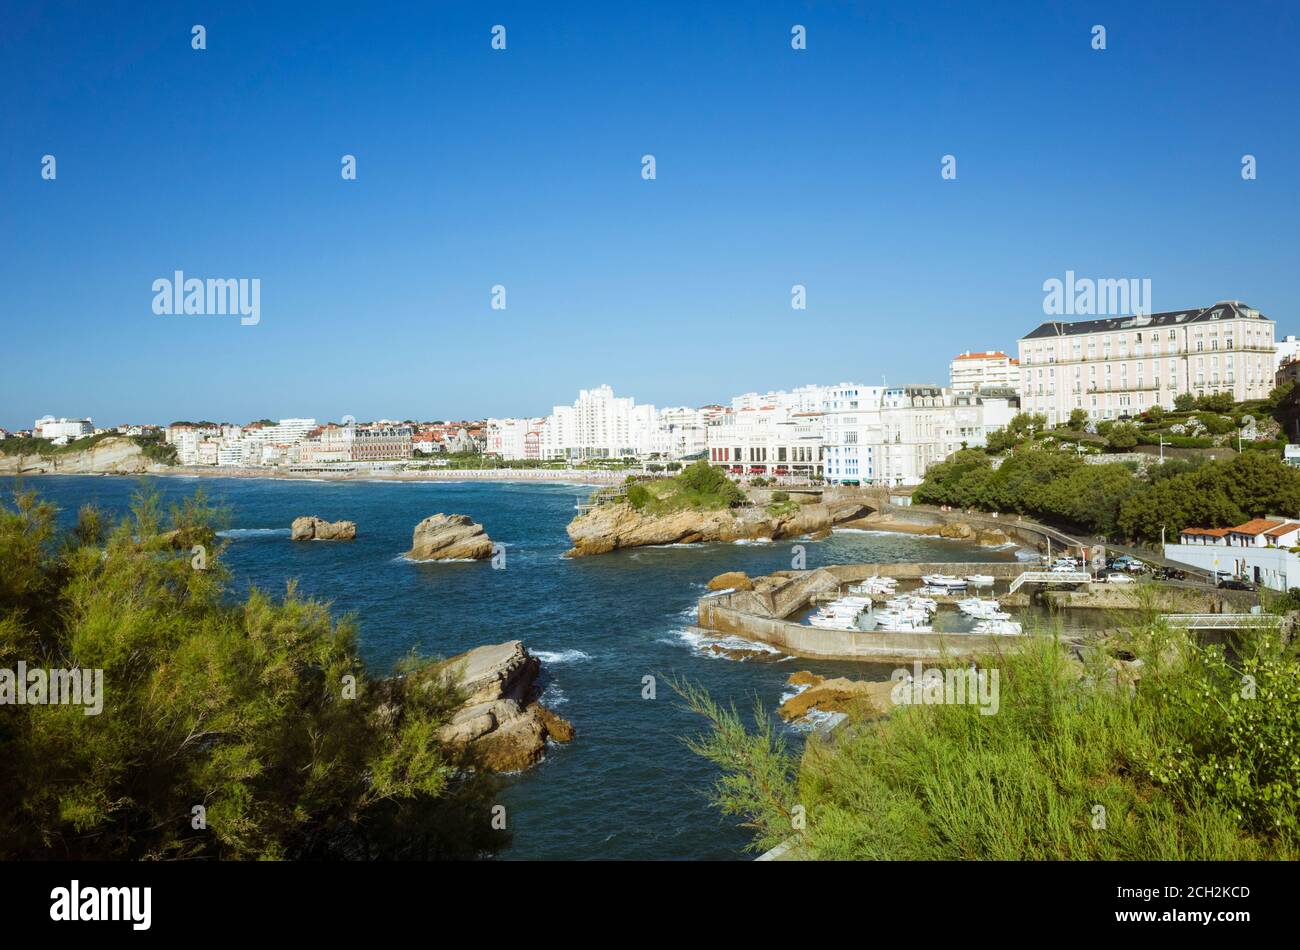 Biarritz, pays basque français, France - 19 juillet 2019 : paysage urbain avec le port de pêche en premier plan. Banque D'Images